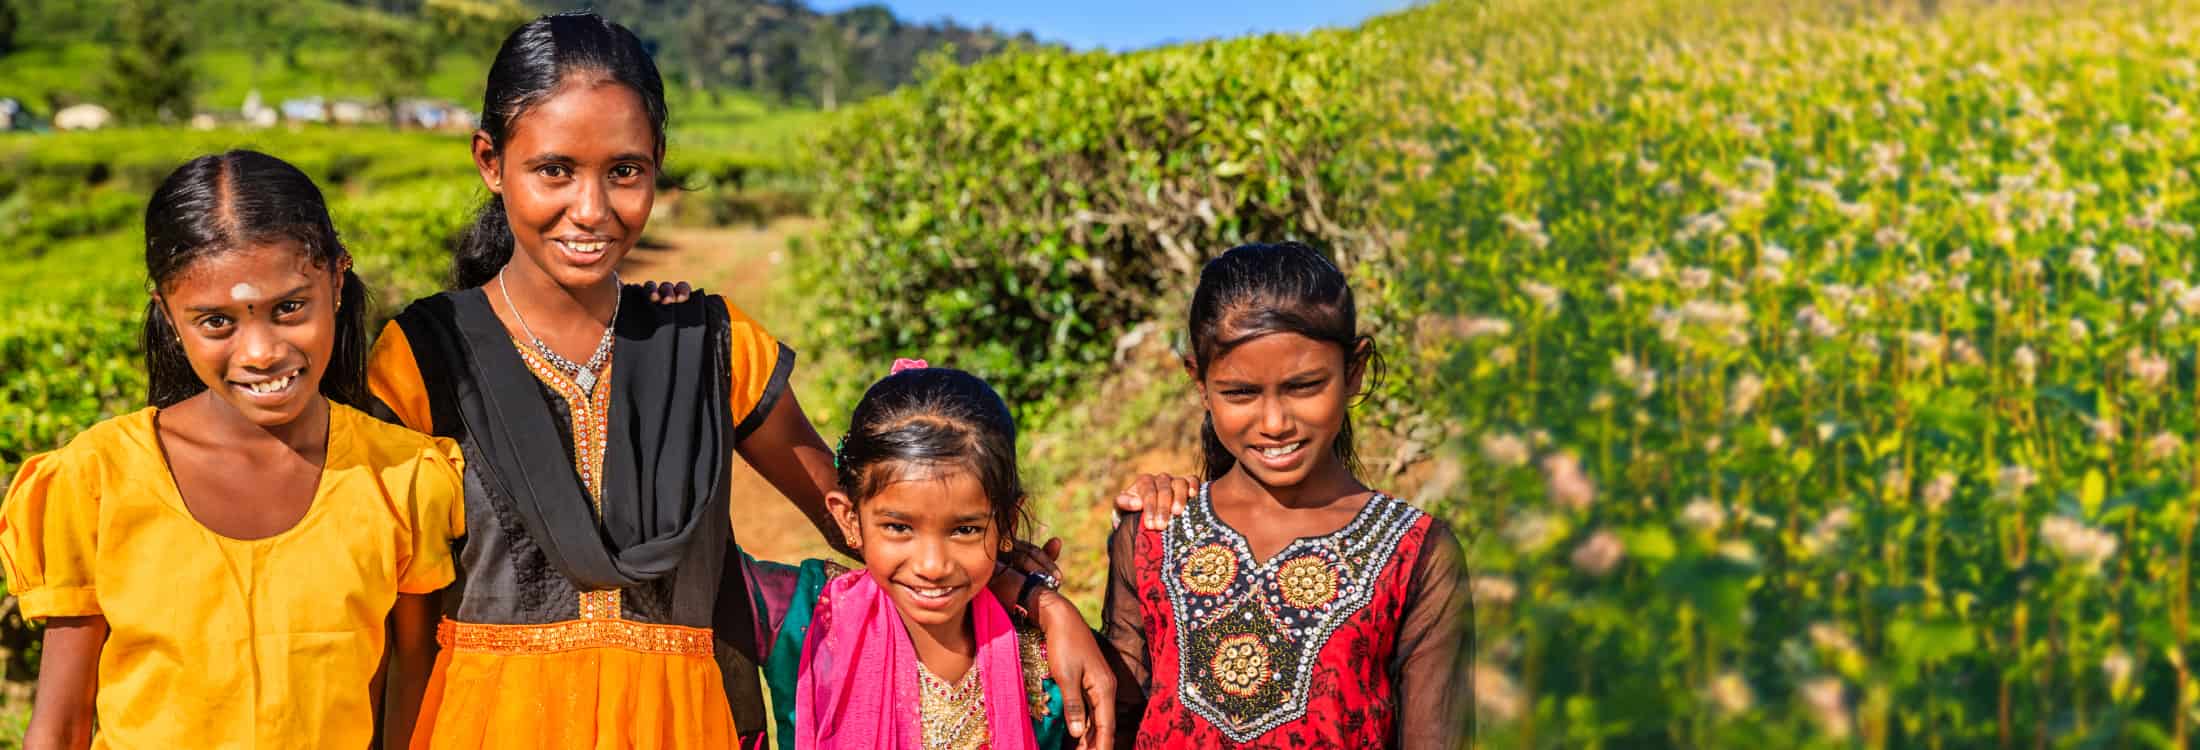 Envie dinheiro aos seus entes queridos no Sri Lanka - rápido e seguro com sendvalu